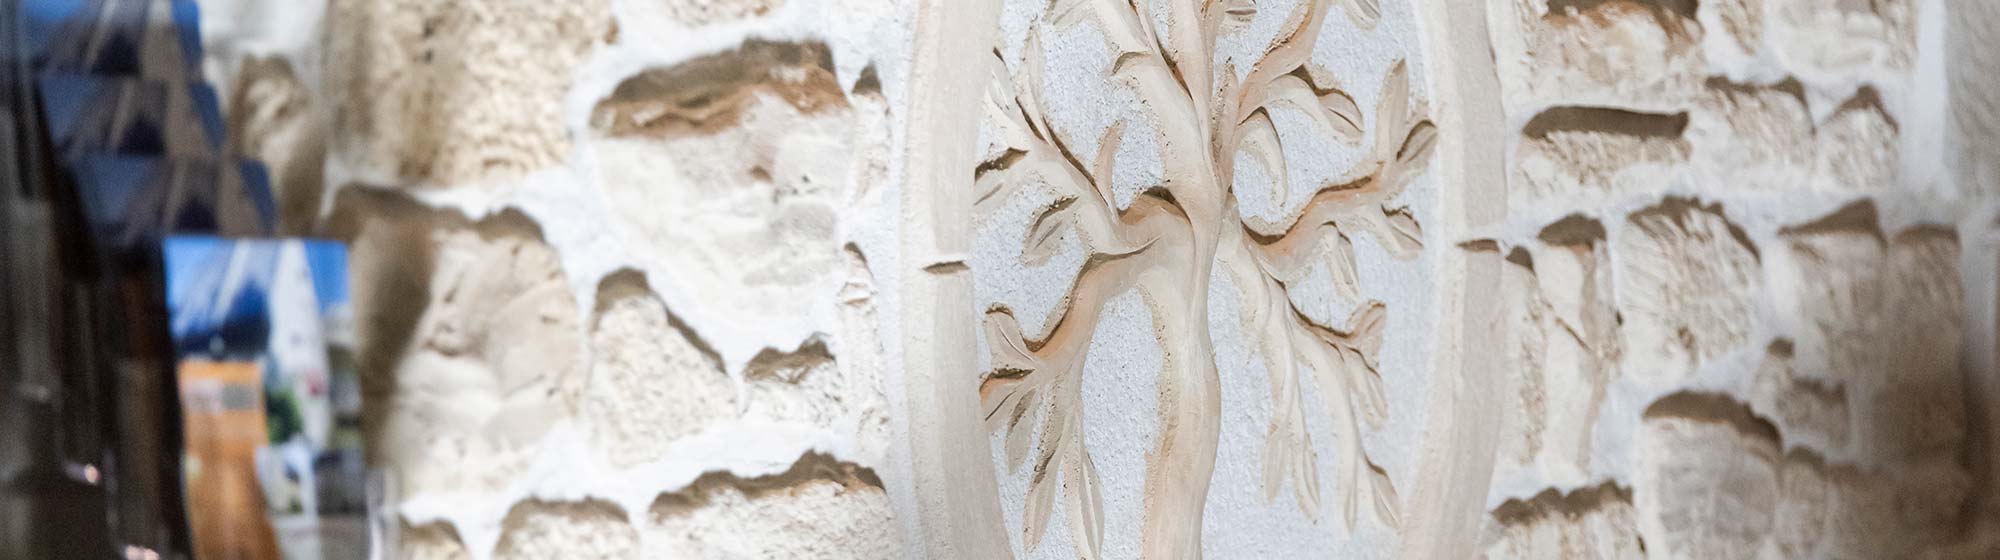 Motif d'arbre gravé dans la pierre blanchie